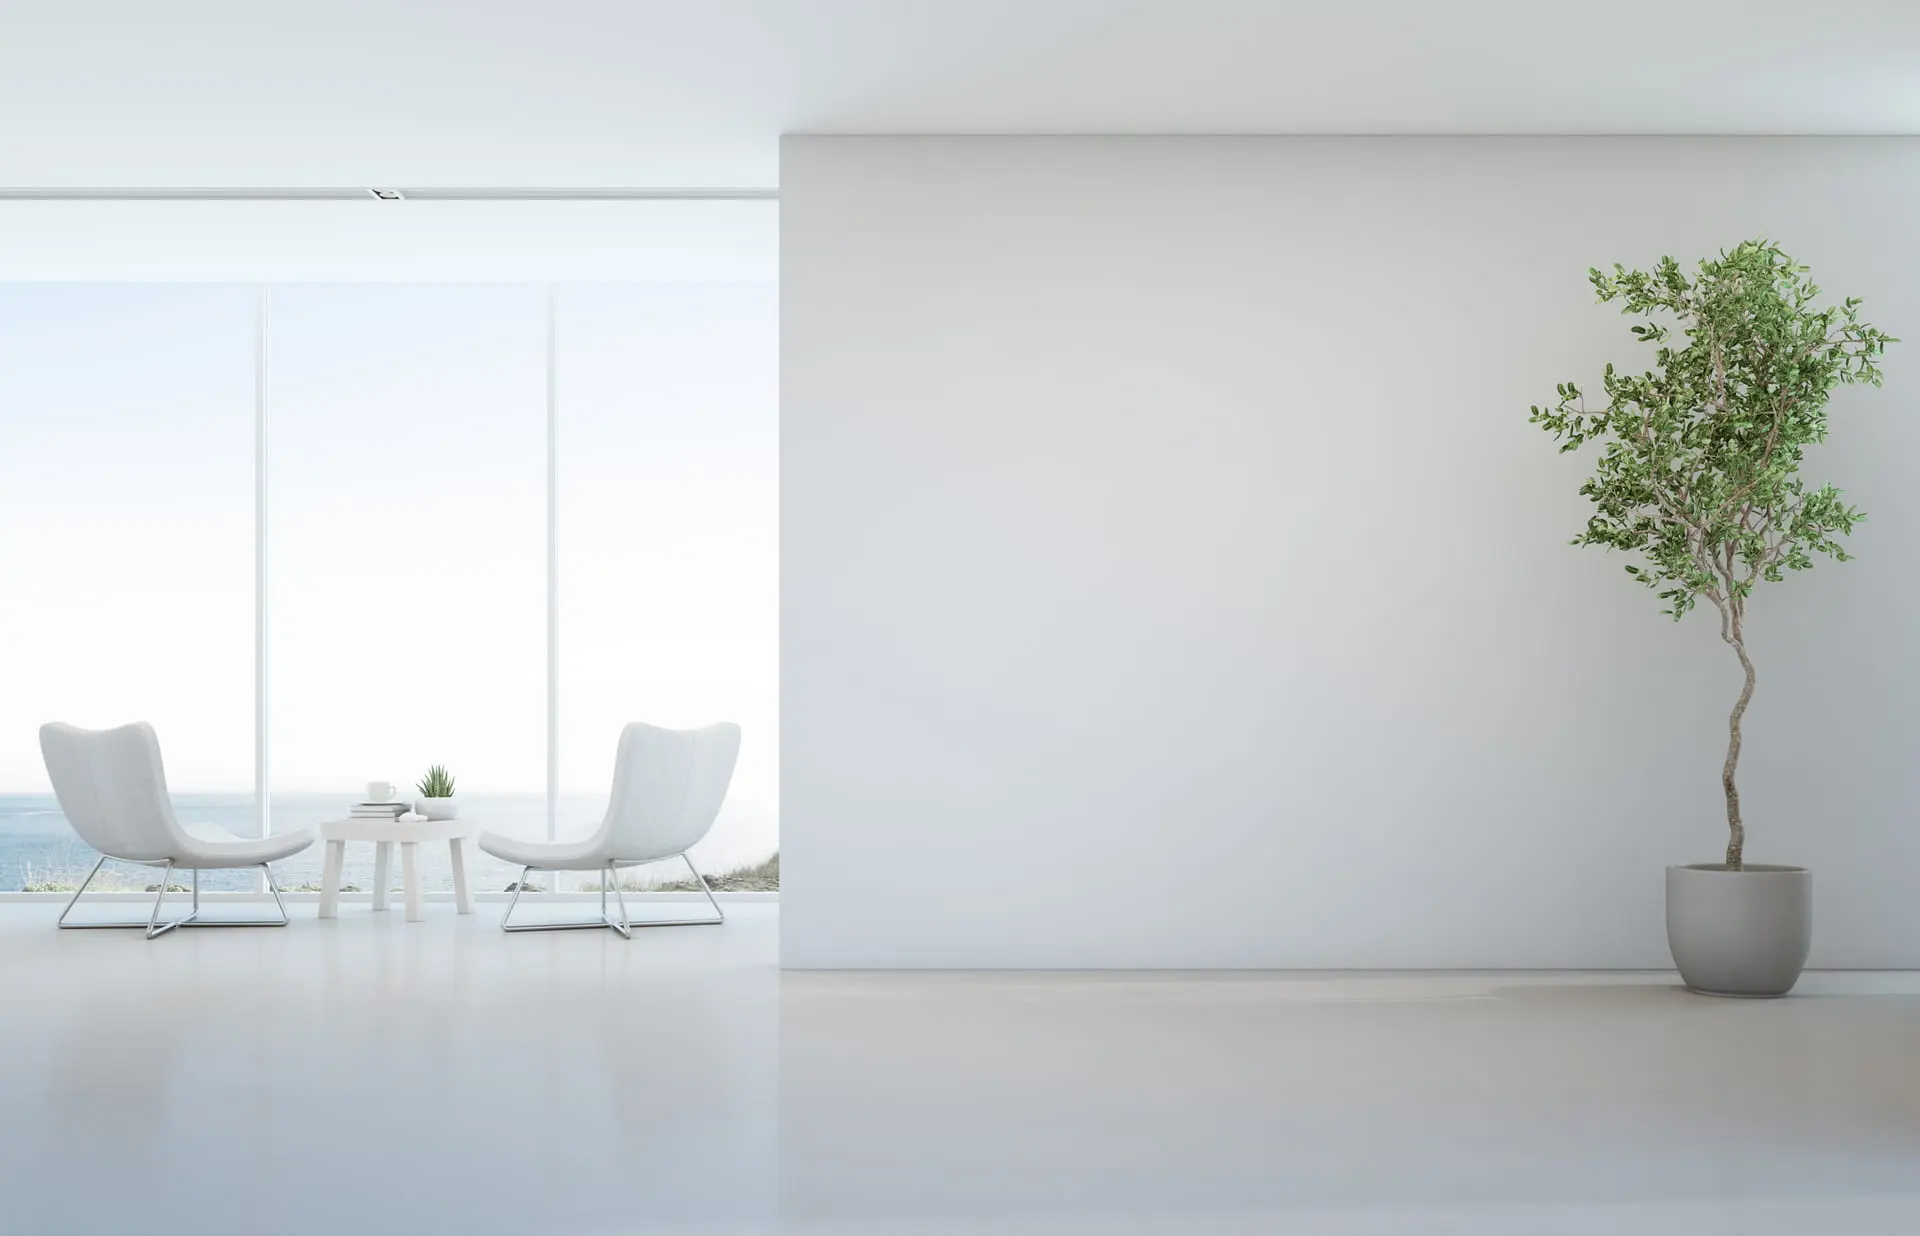 Vardagsrum i minimalistisk stil i ljusa toner